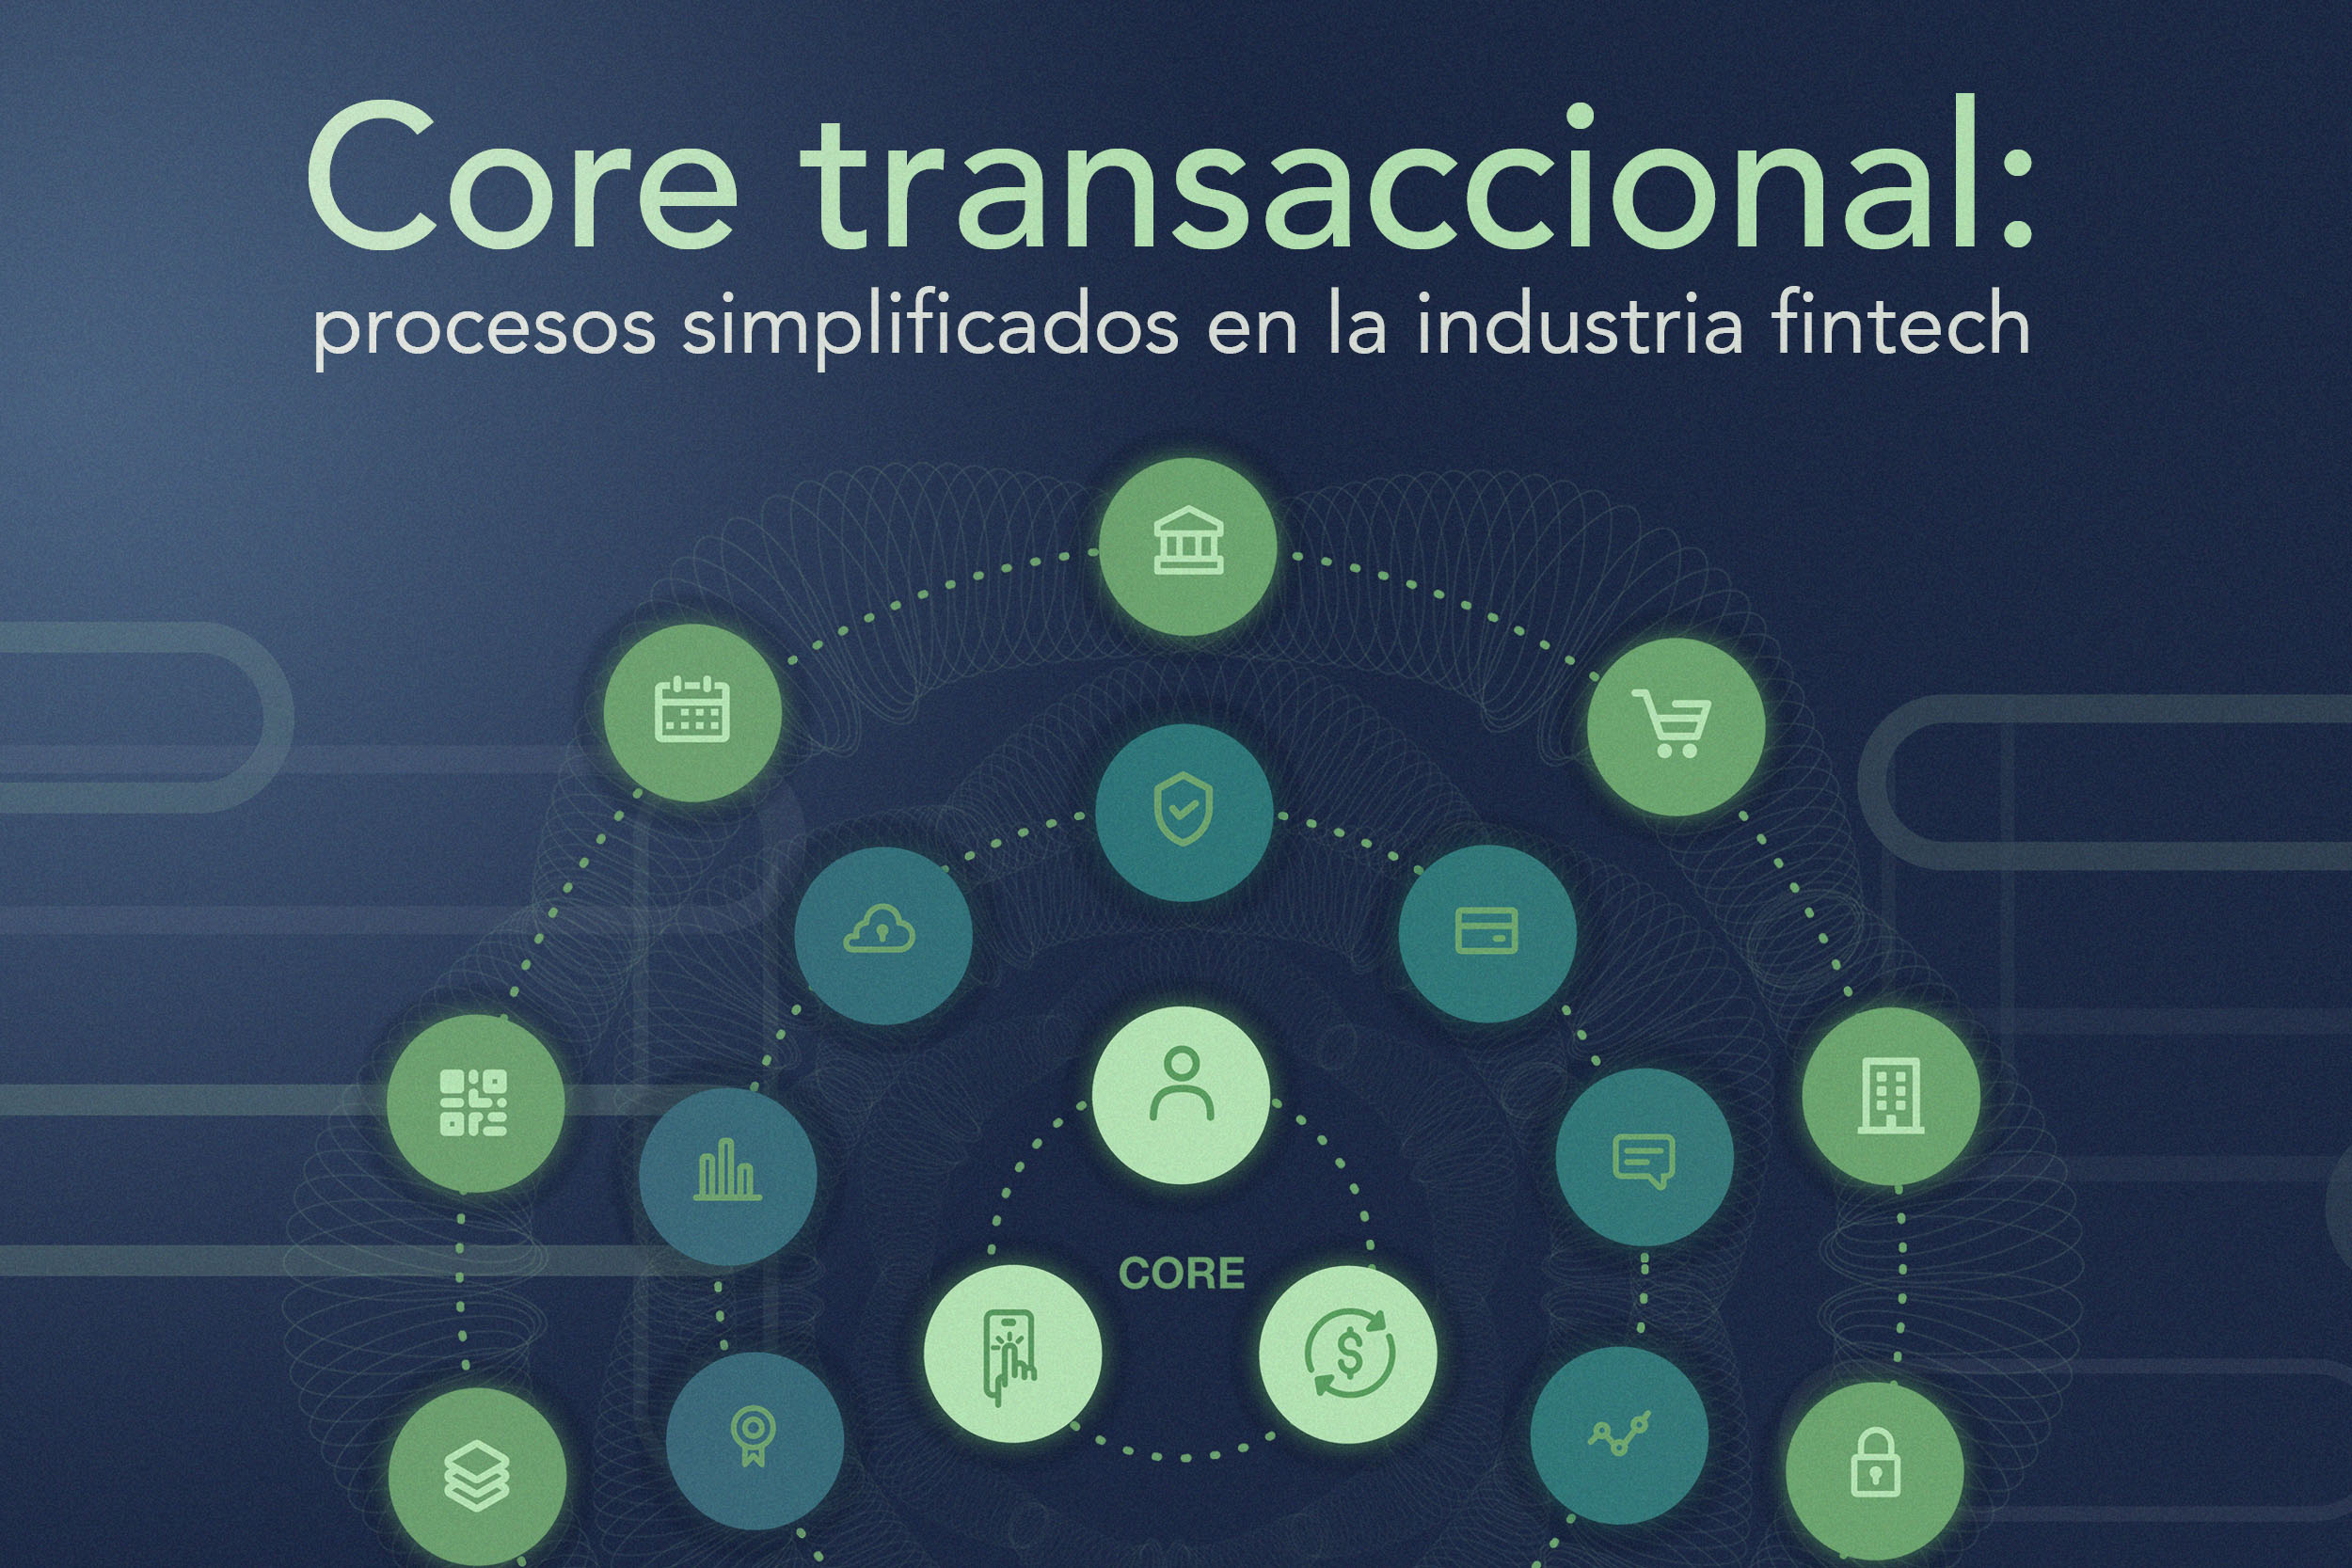 core transaccional: procesos simplificados en la industria fintech